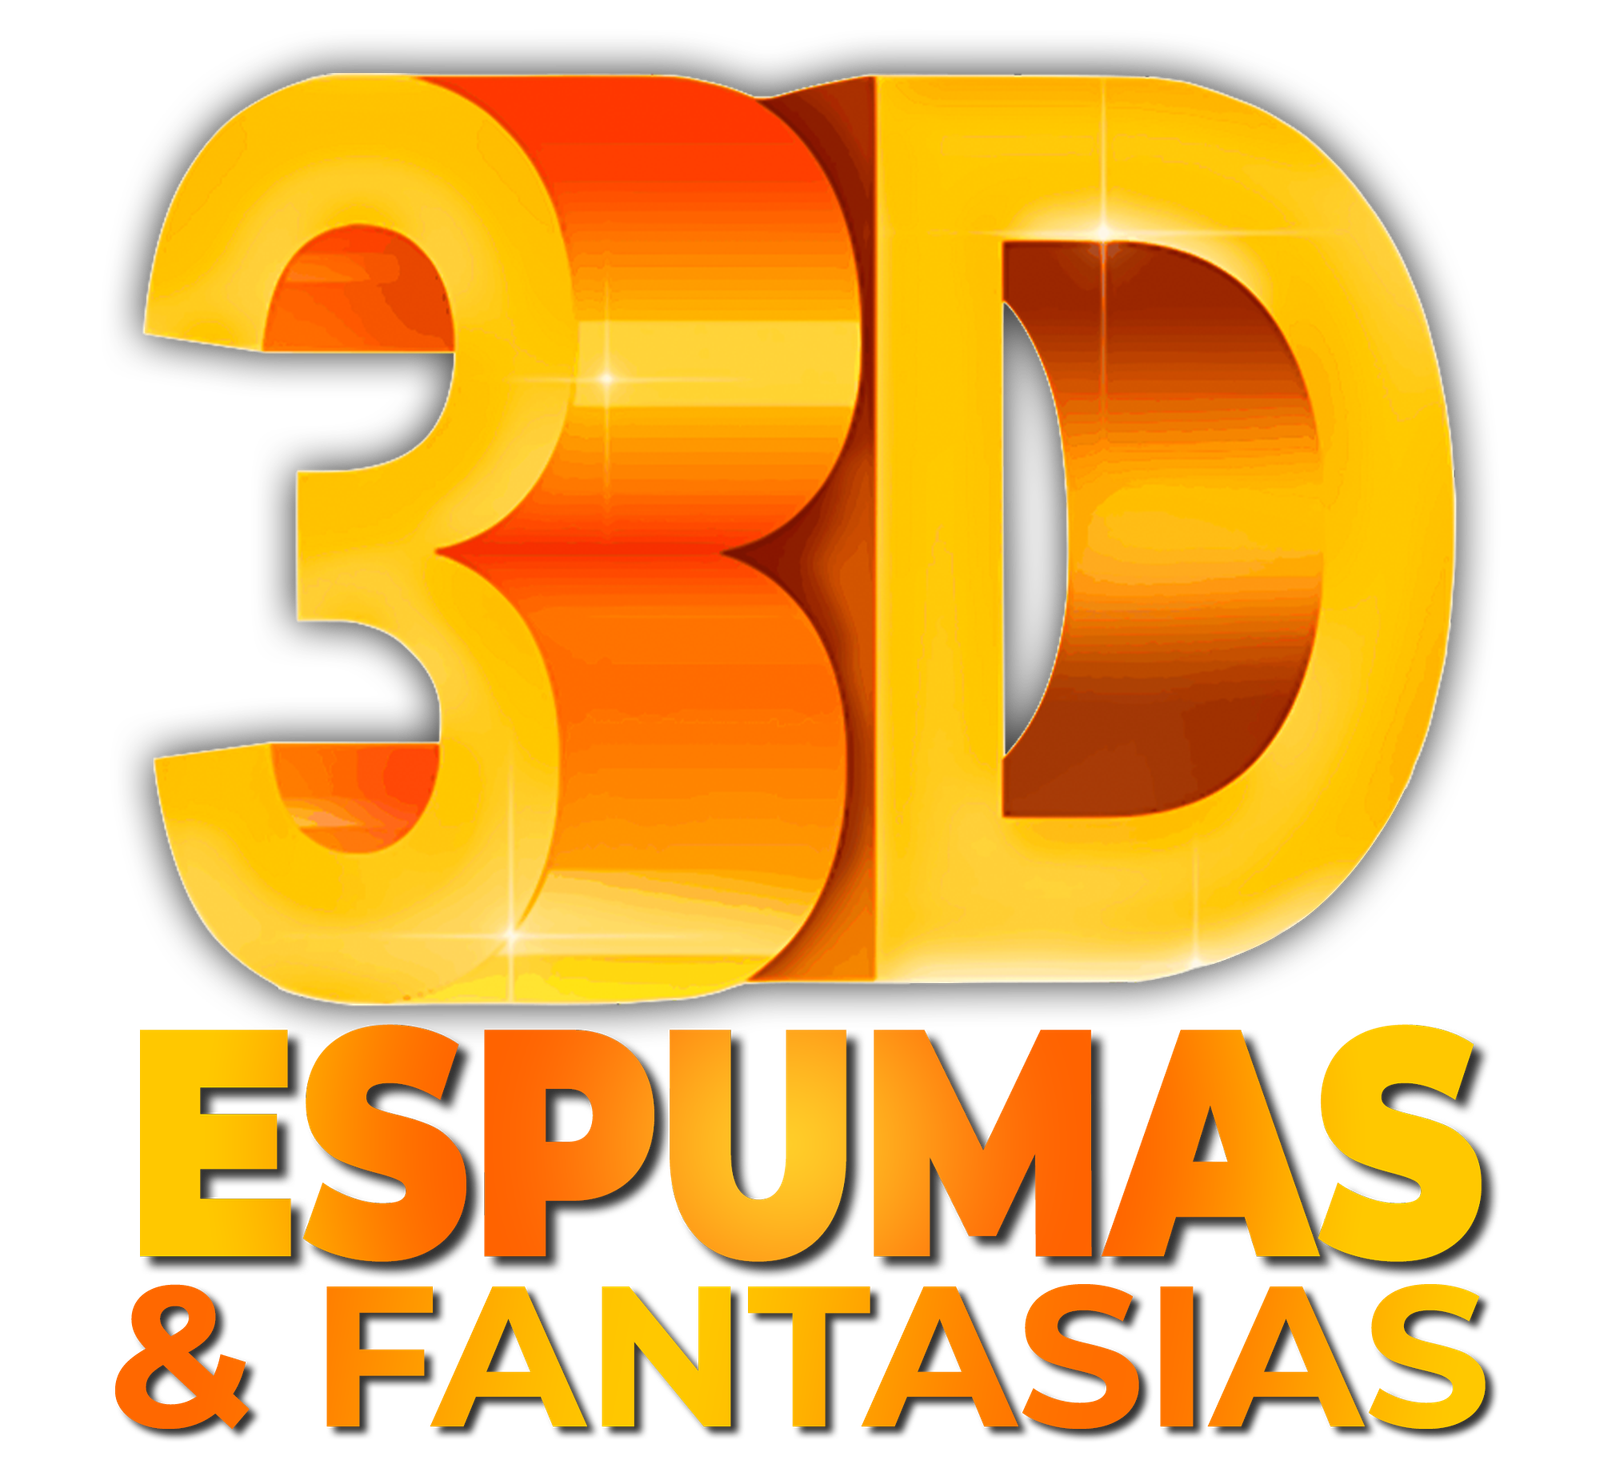 Fantasia Arlequina Conjunto Regata com Taco – 3D Espumas